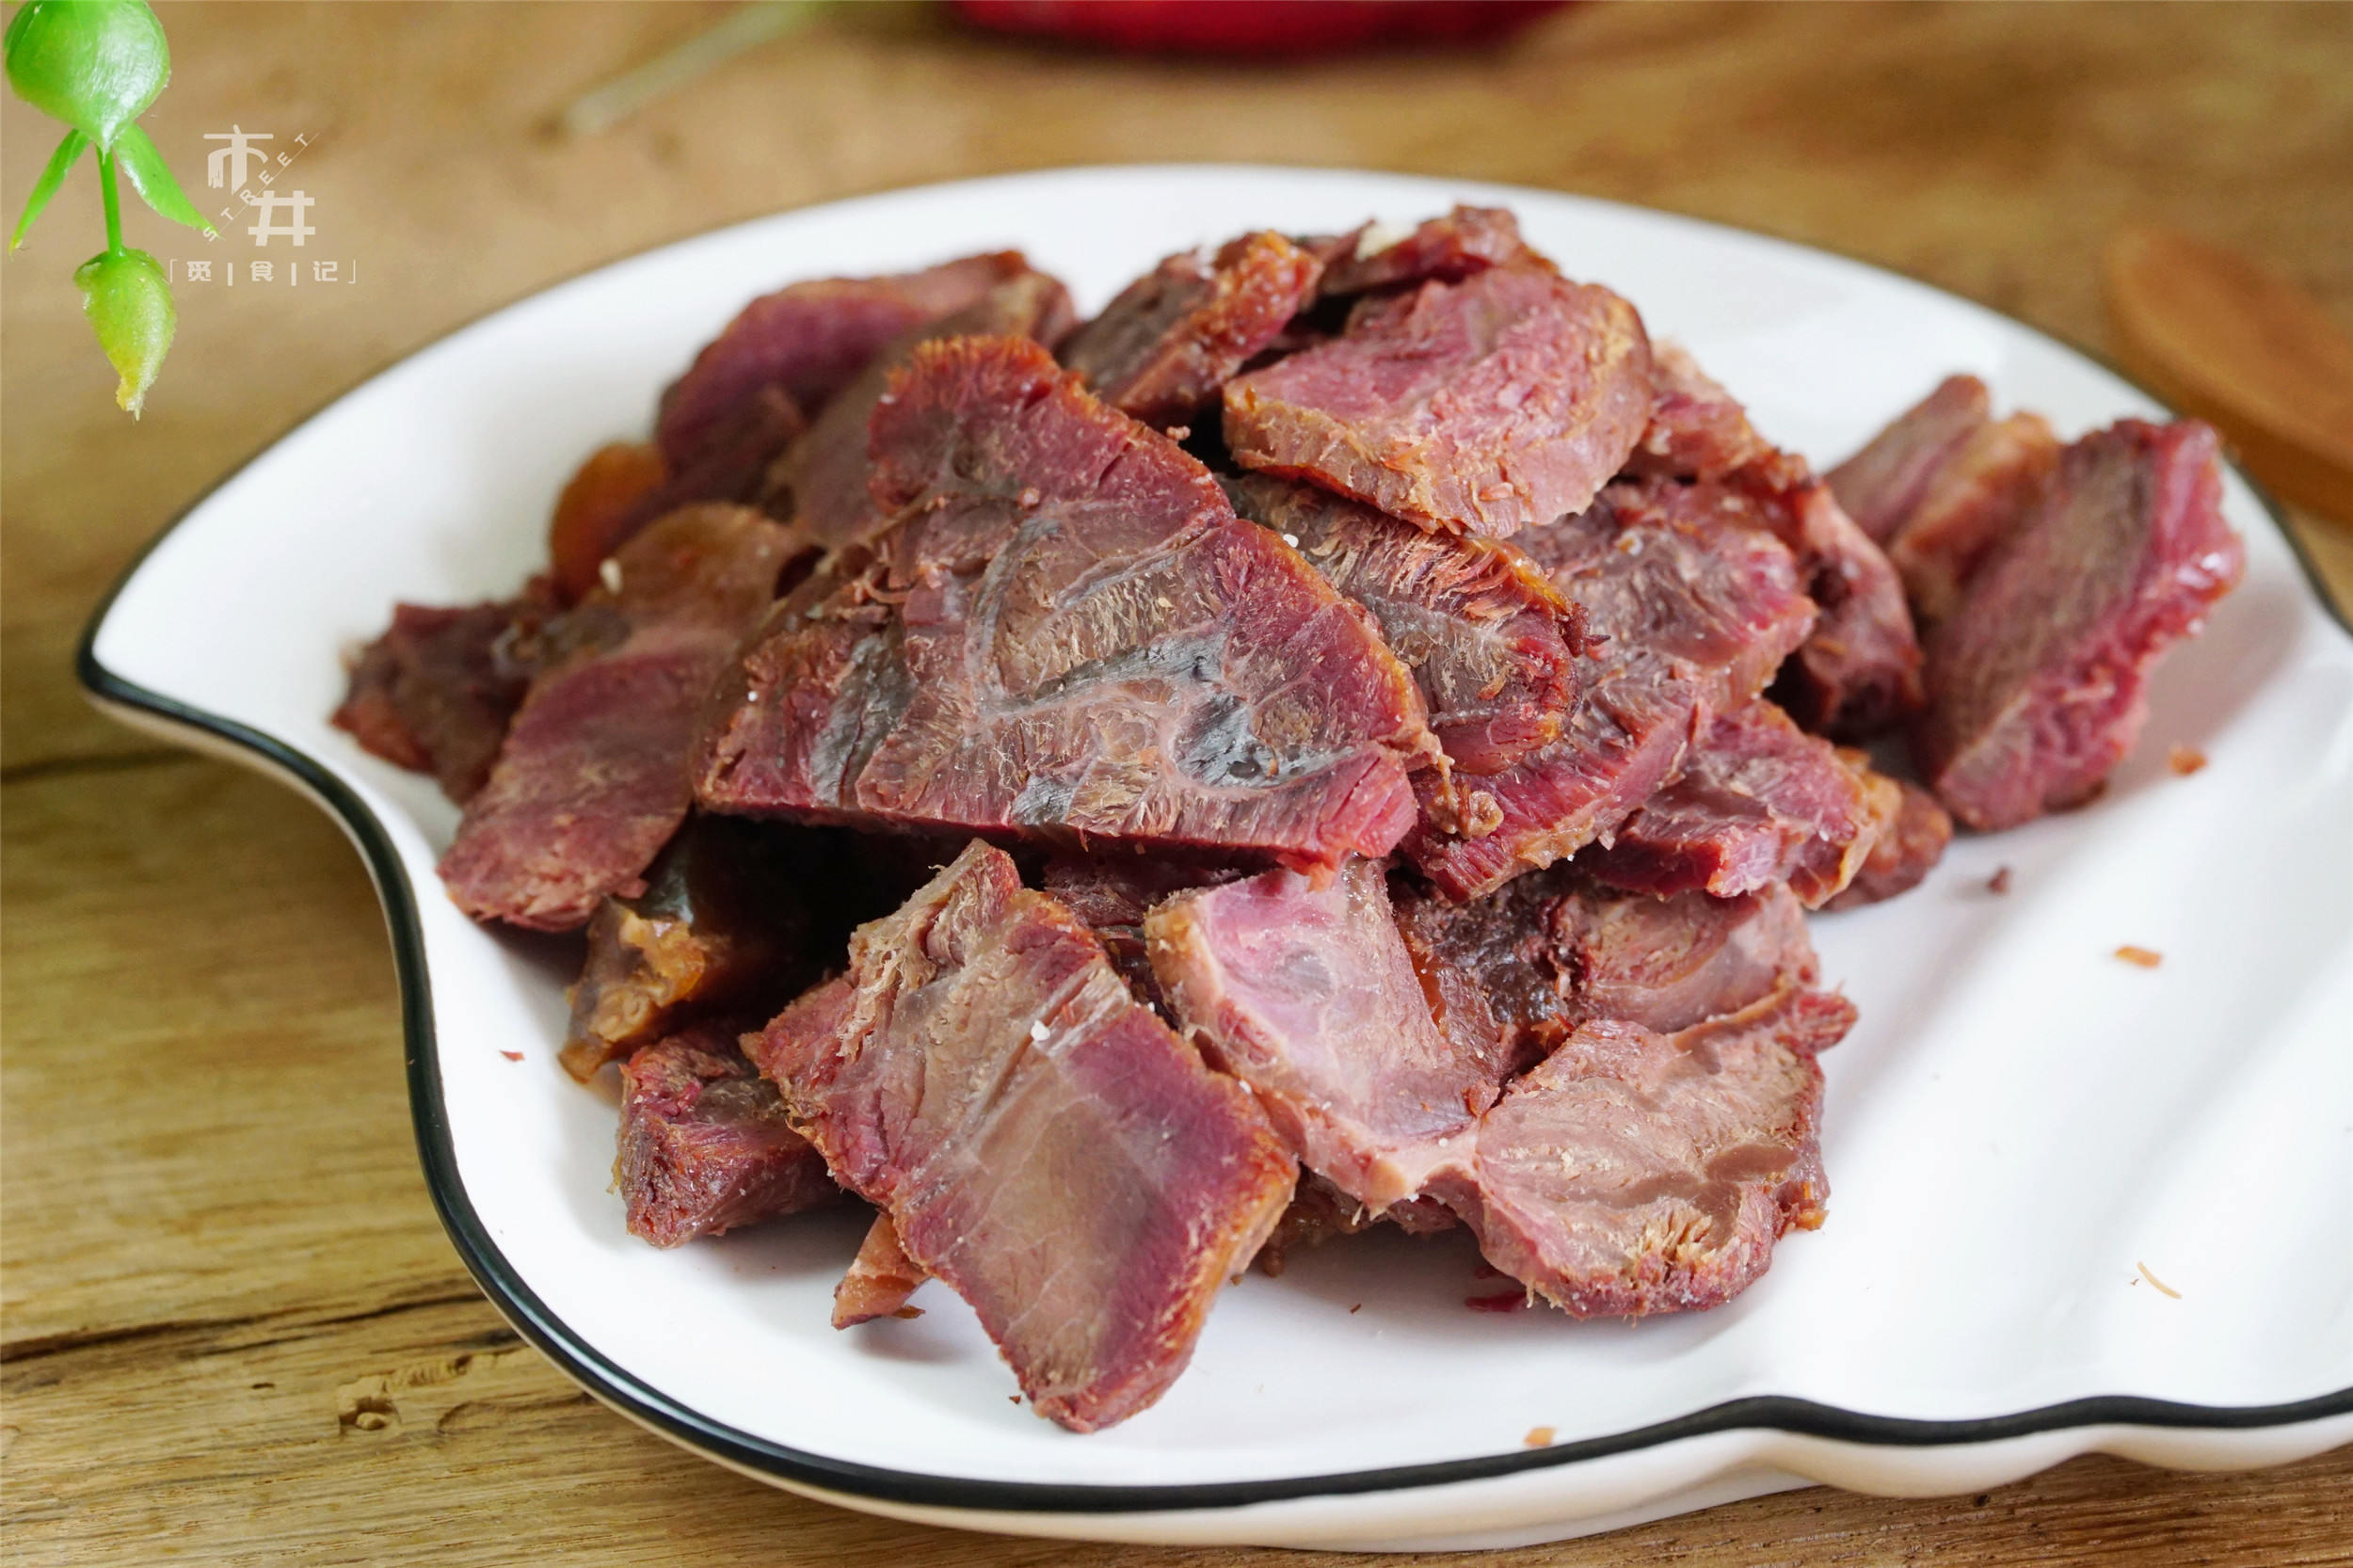 卤牛肉的做法大全 对牛腱子肉这种韧劲十足的肉来说，似乎唯一合适的做法就是卤了！